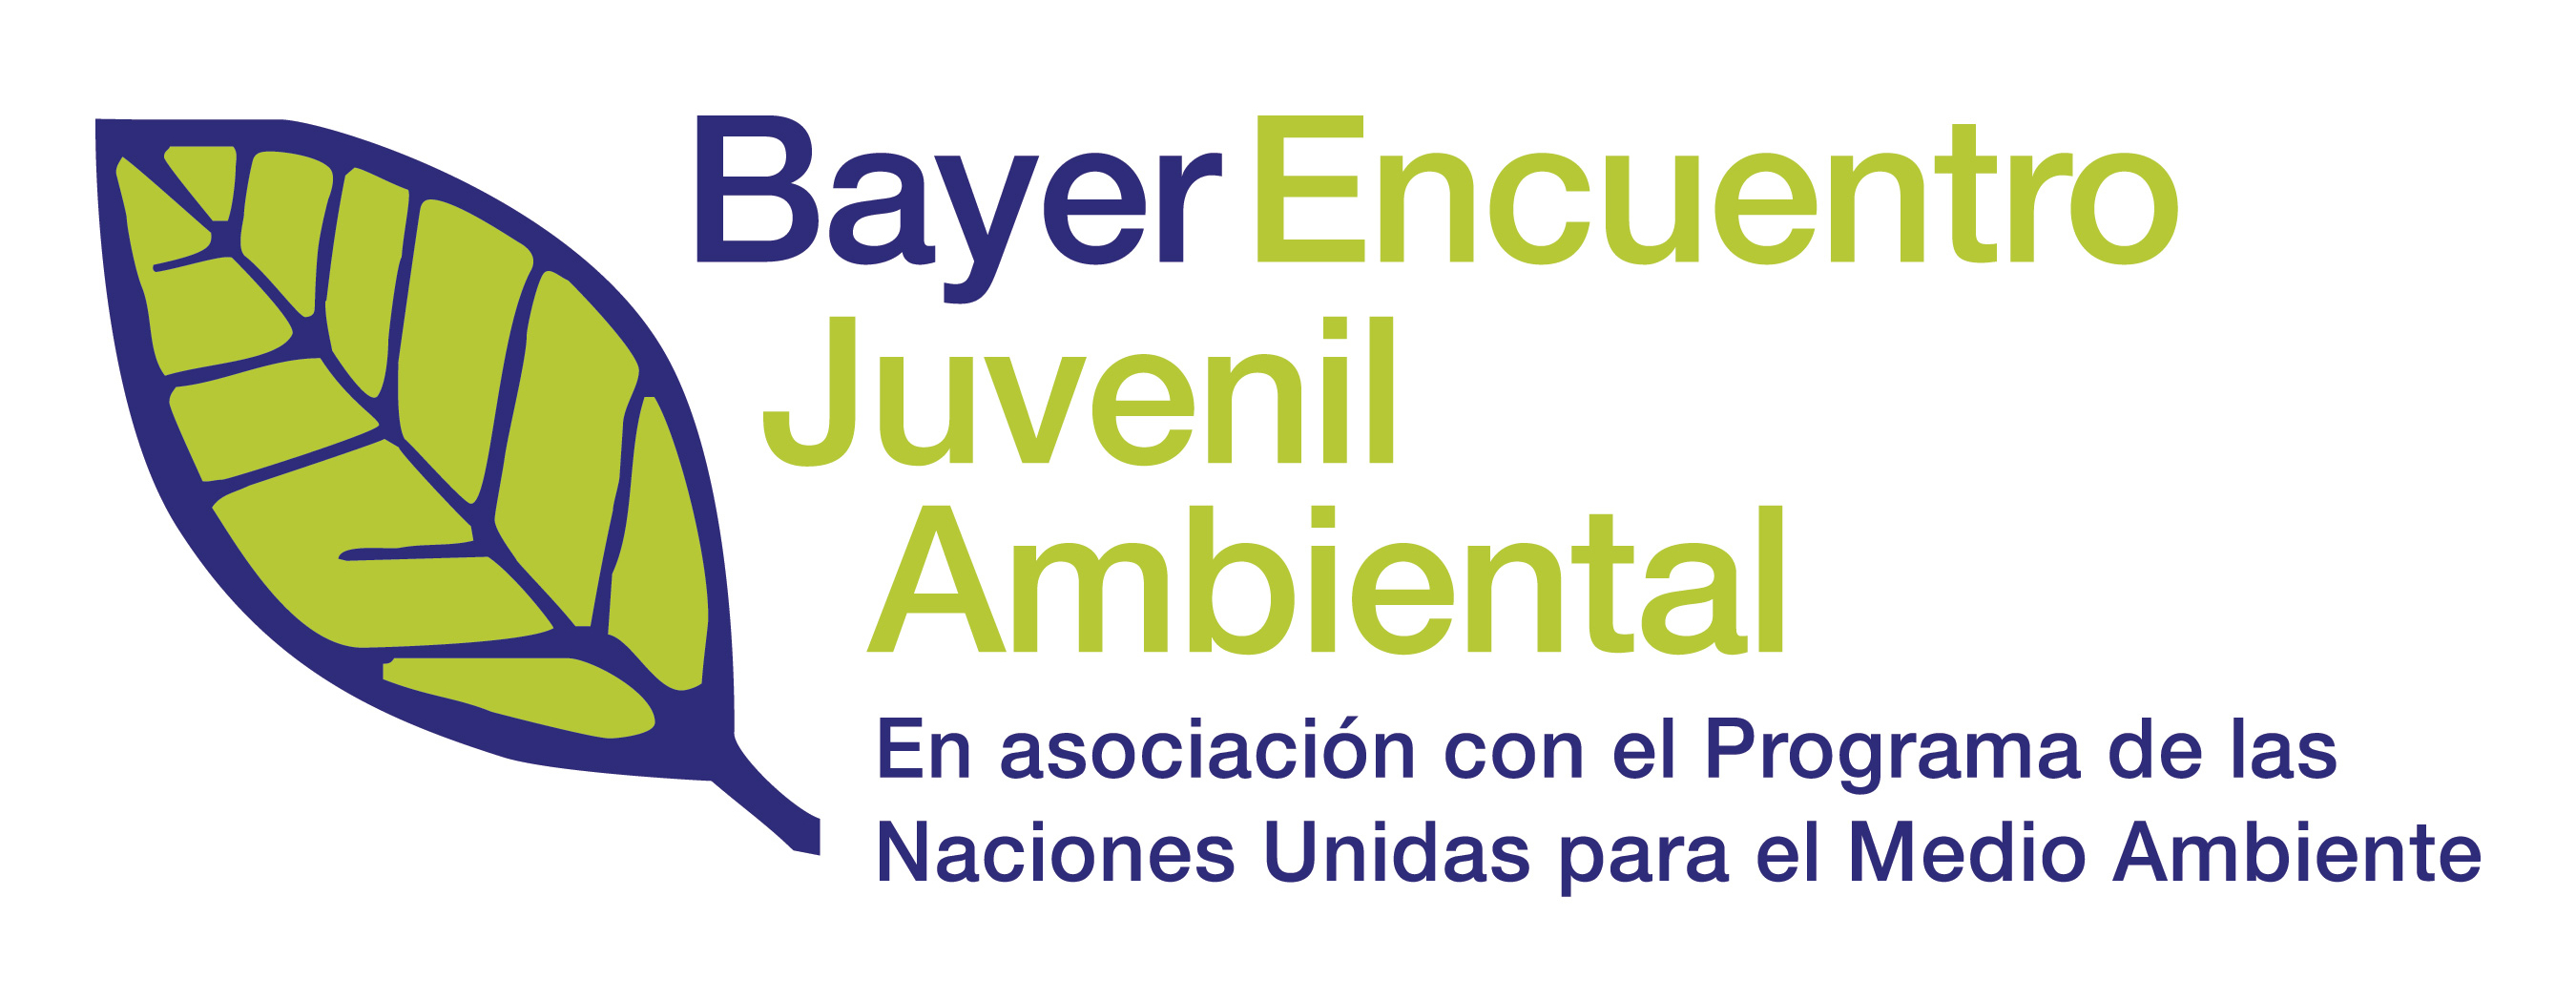 Bayer encuentro juvenil ambiental abre sus inscripciones